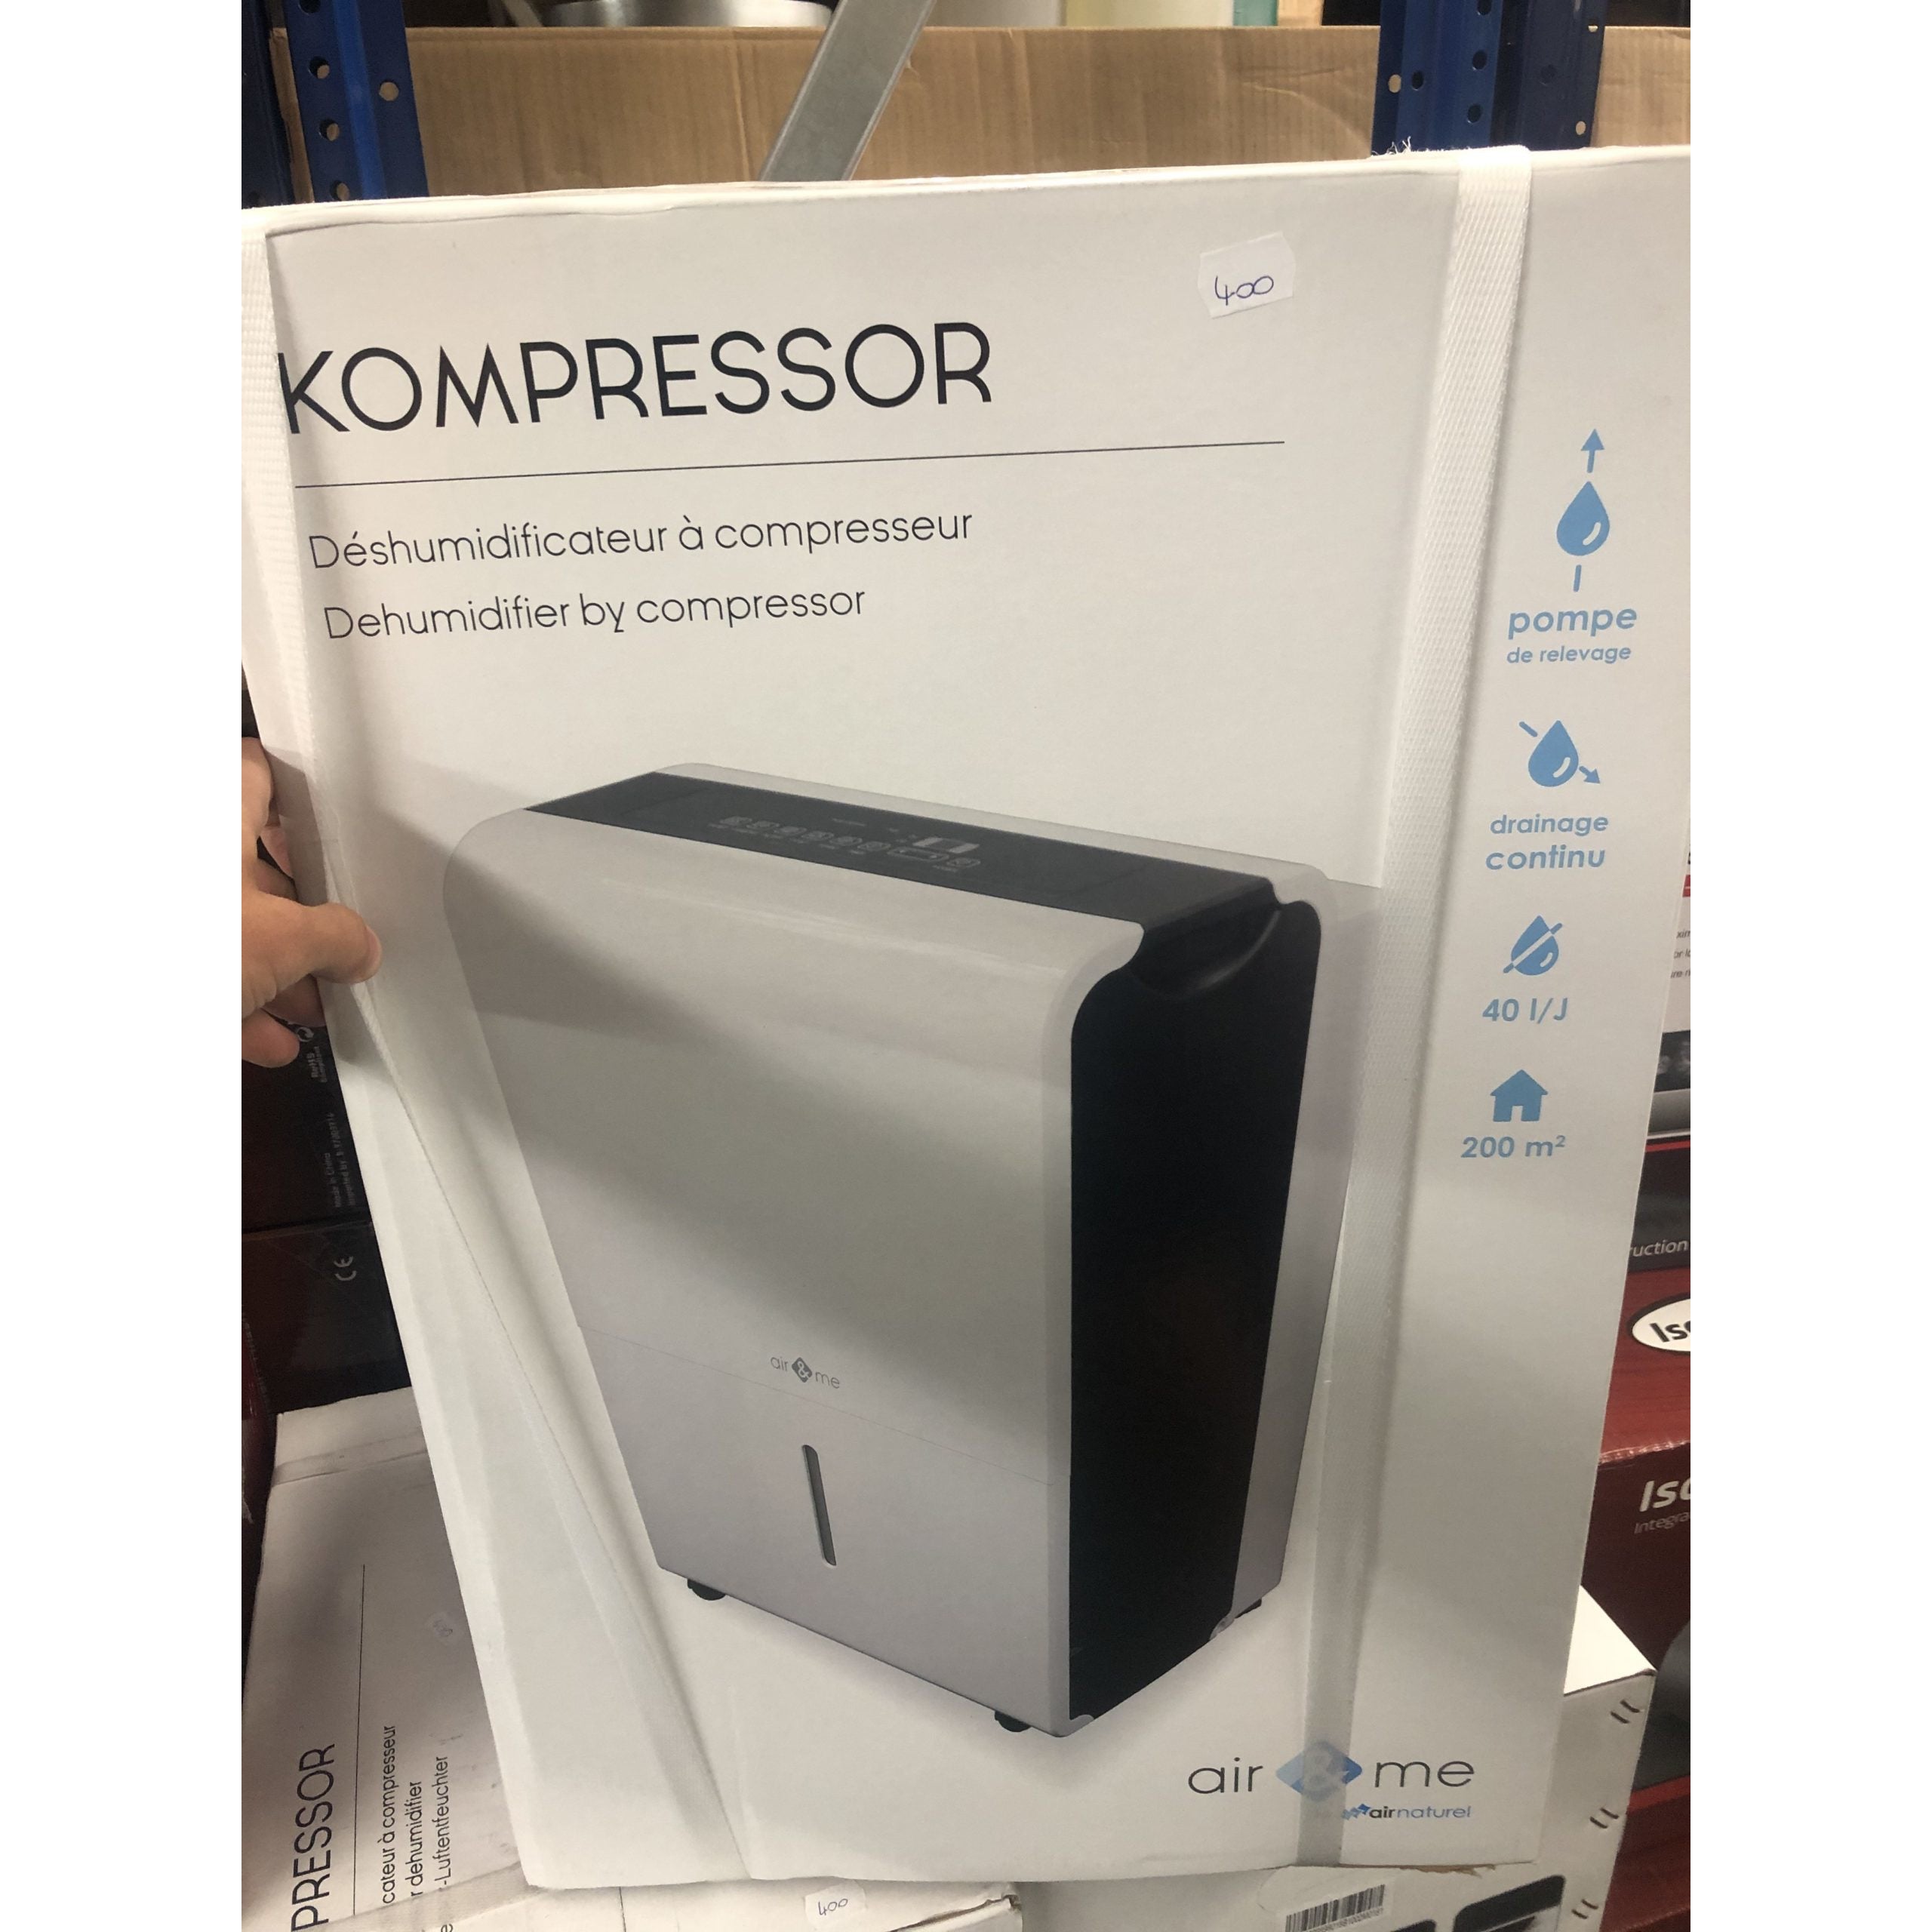 Kompressor Dehumidifier 40l